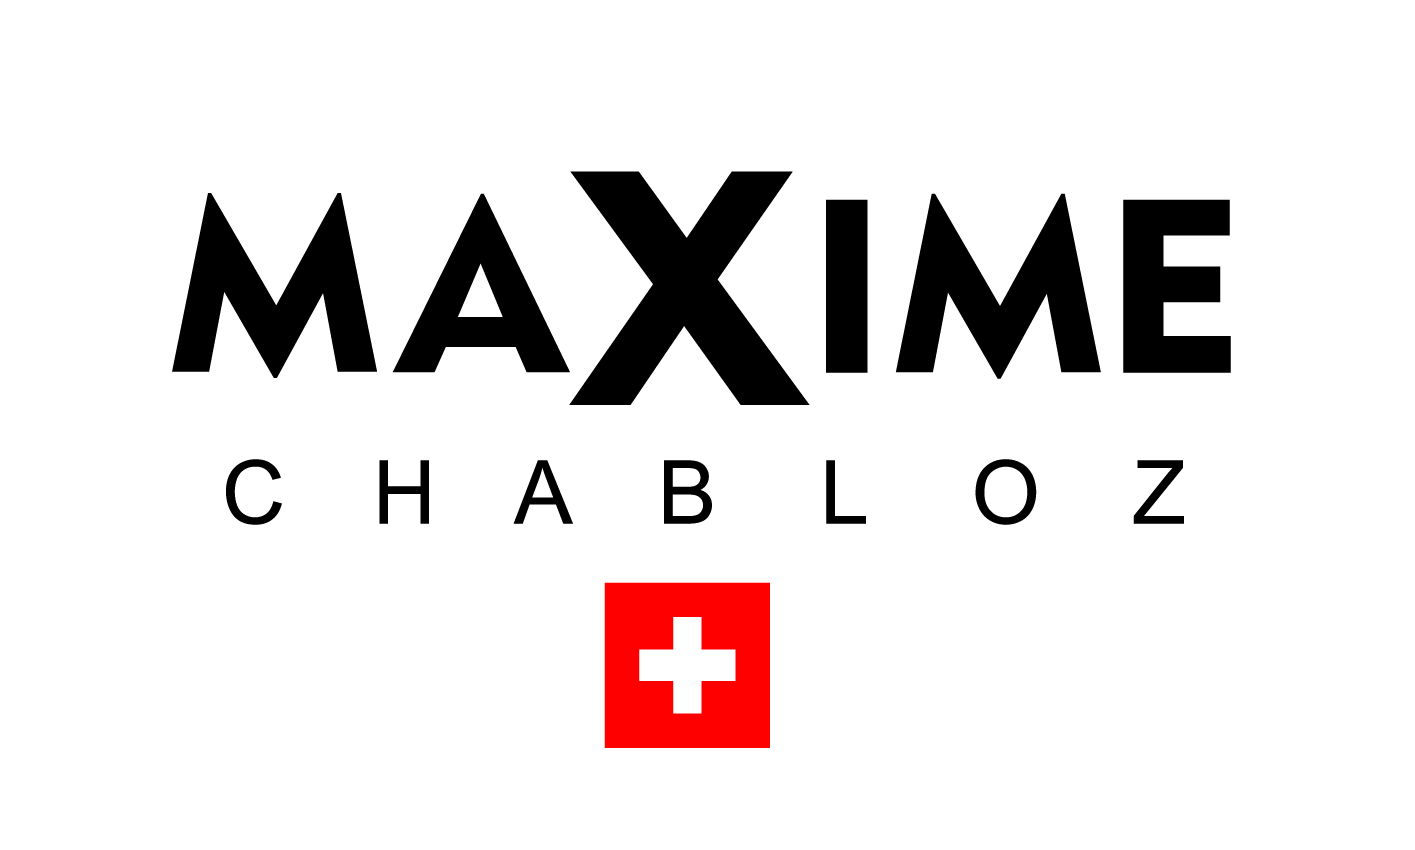 Maxime Chabloz